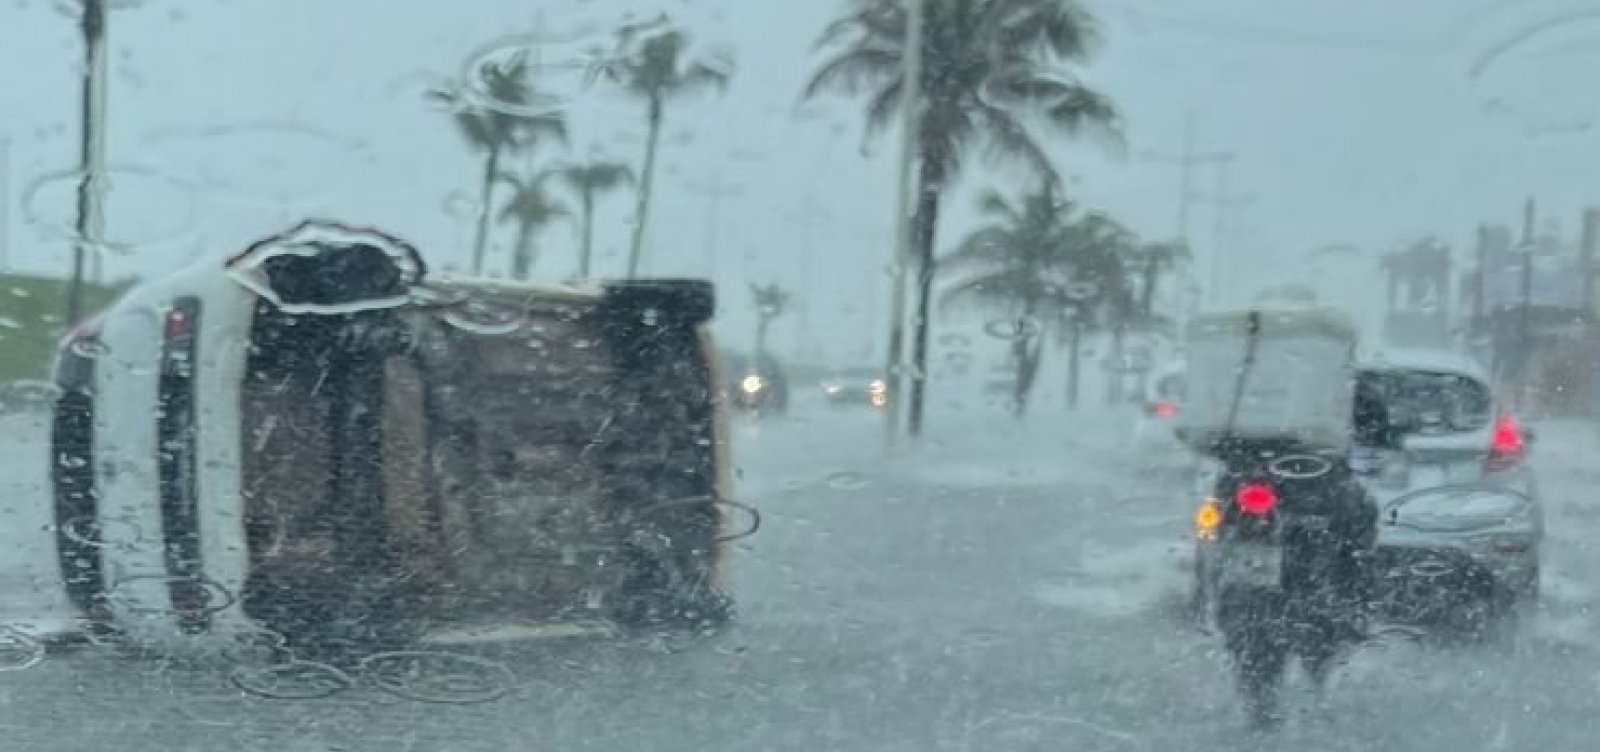 Em meio a fortes chuvas, carro capota na Boca do Rio